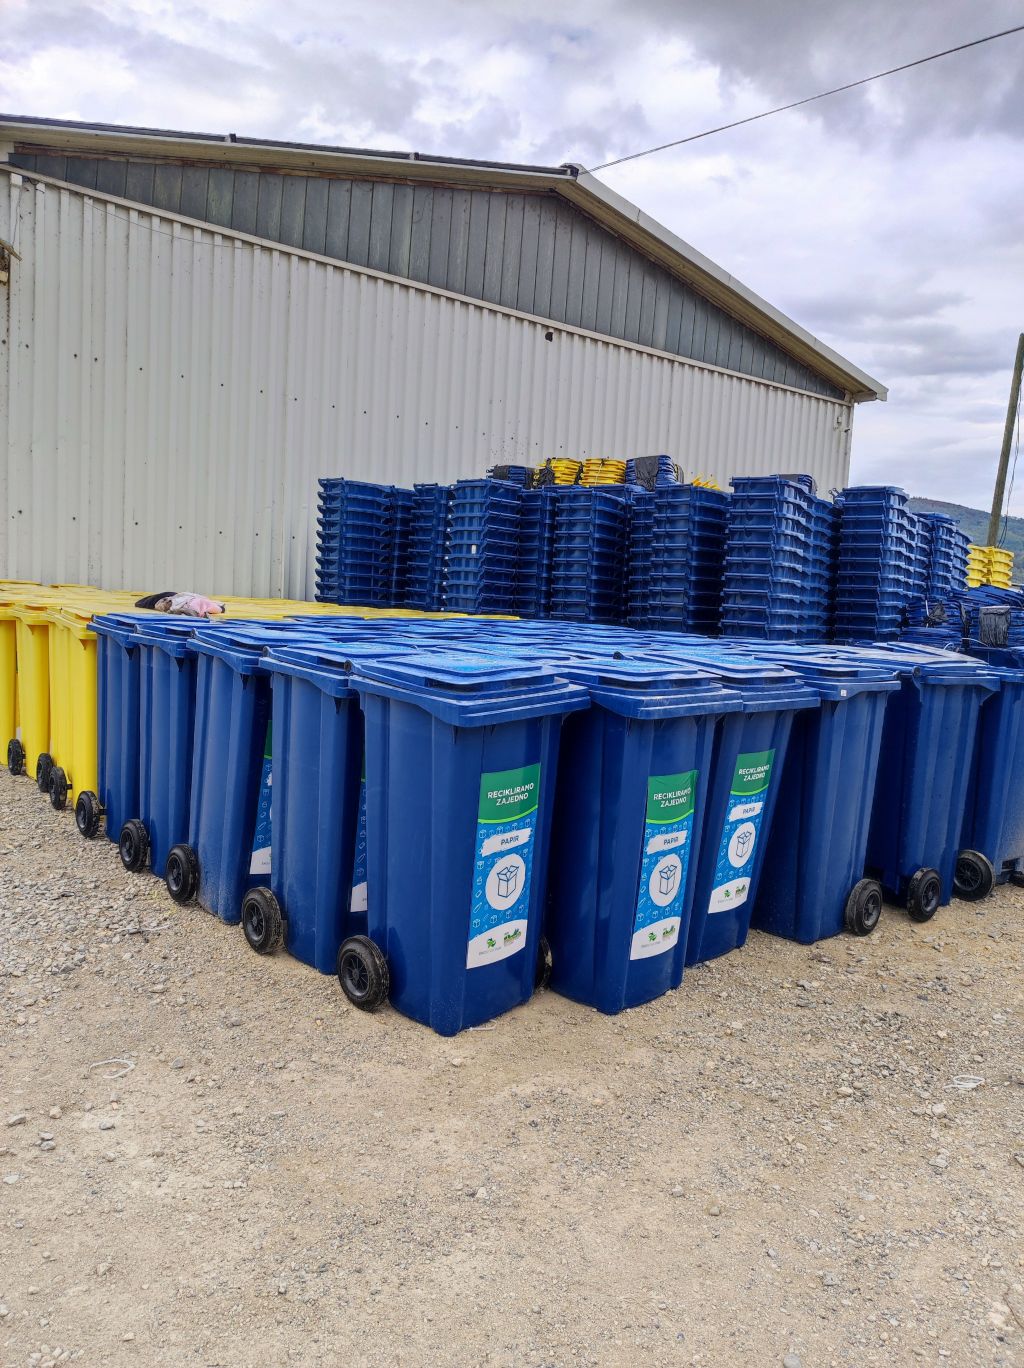 Ekostar pak obezbedio opštini Trstenik 1.750 kanti za reciklažu u domaćinstvima